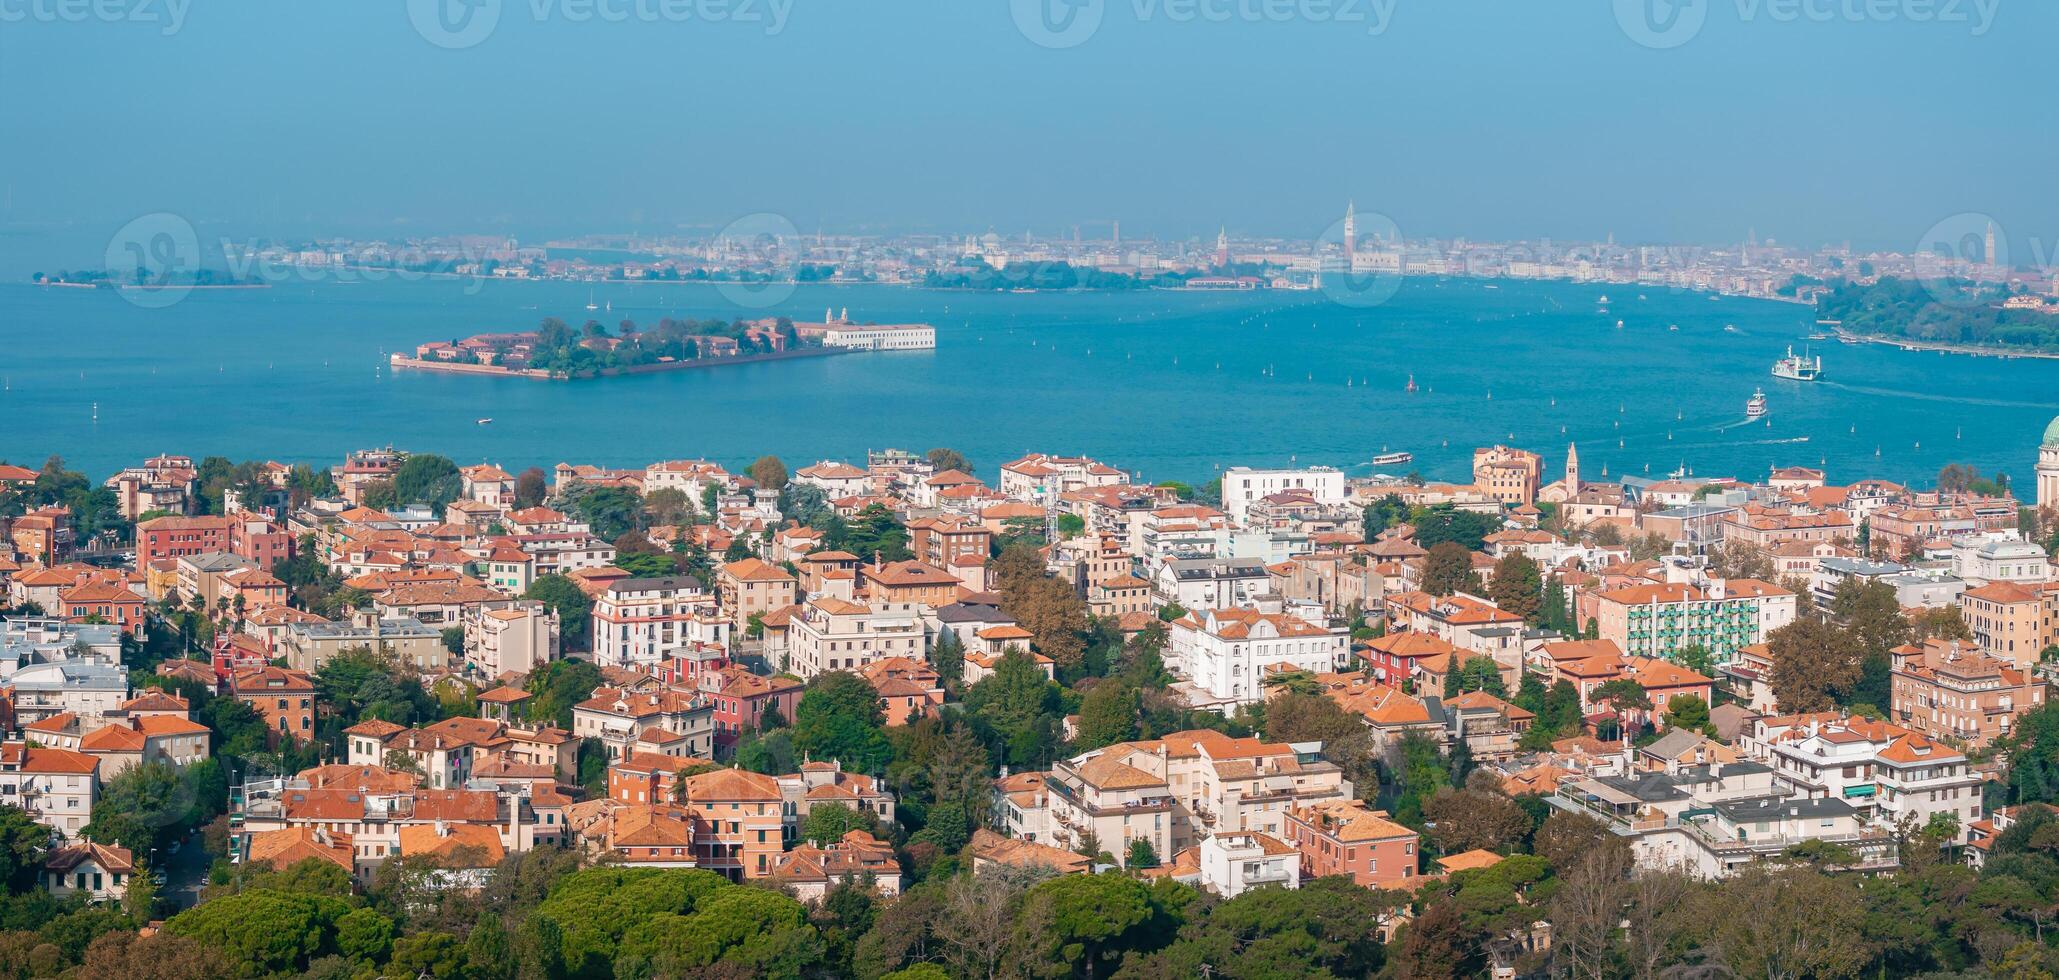 Aerial view of the Lido de Venezia island in Venice, Italy. photo